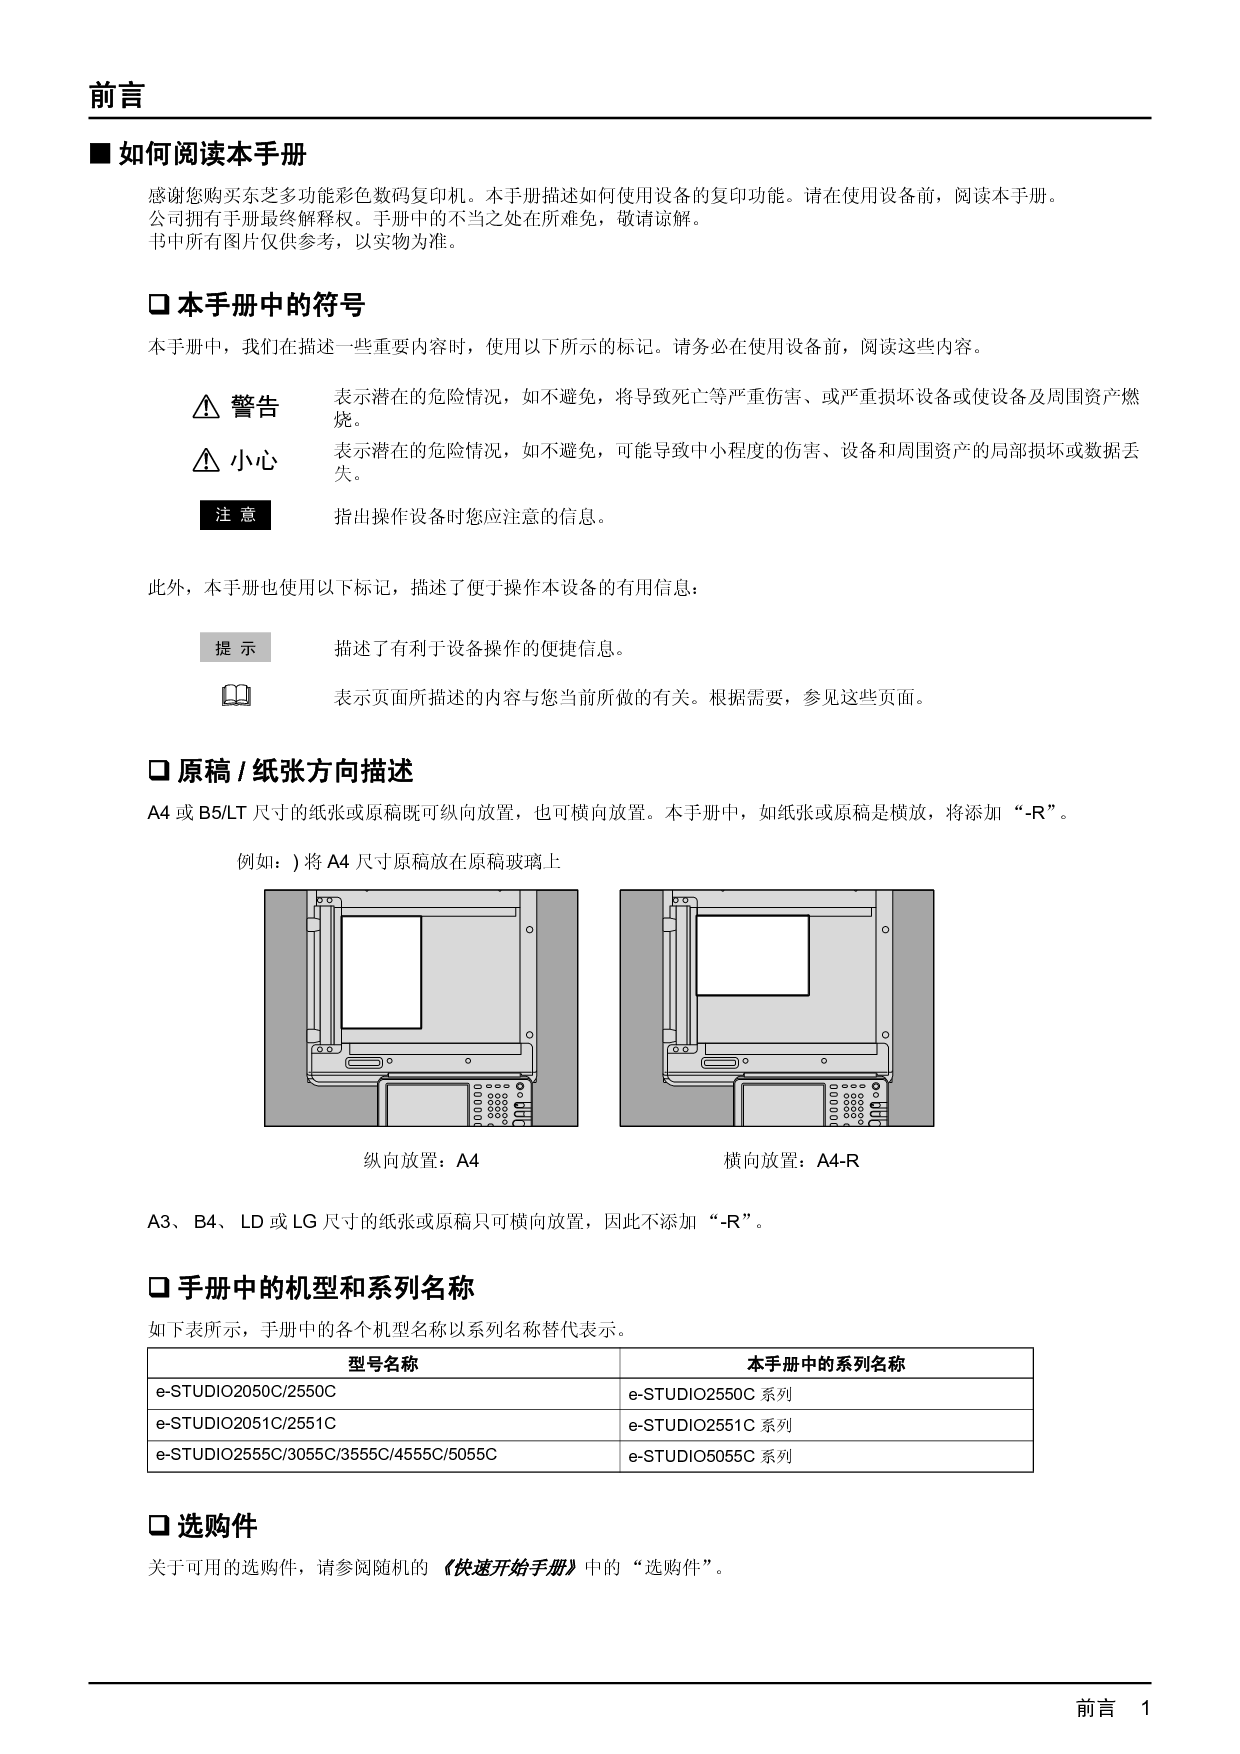 东芝 Toshiba FC-2050C, FC-3555C, e-STUDIO 2050C 复印 用户手册 第2页